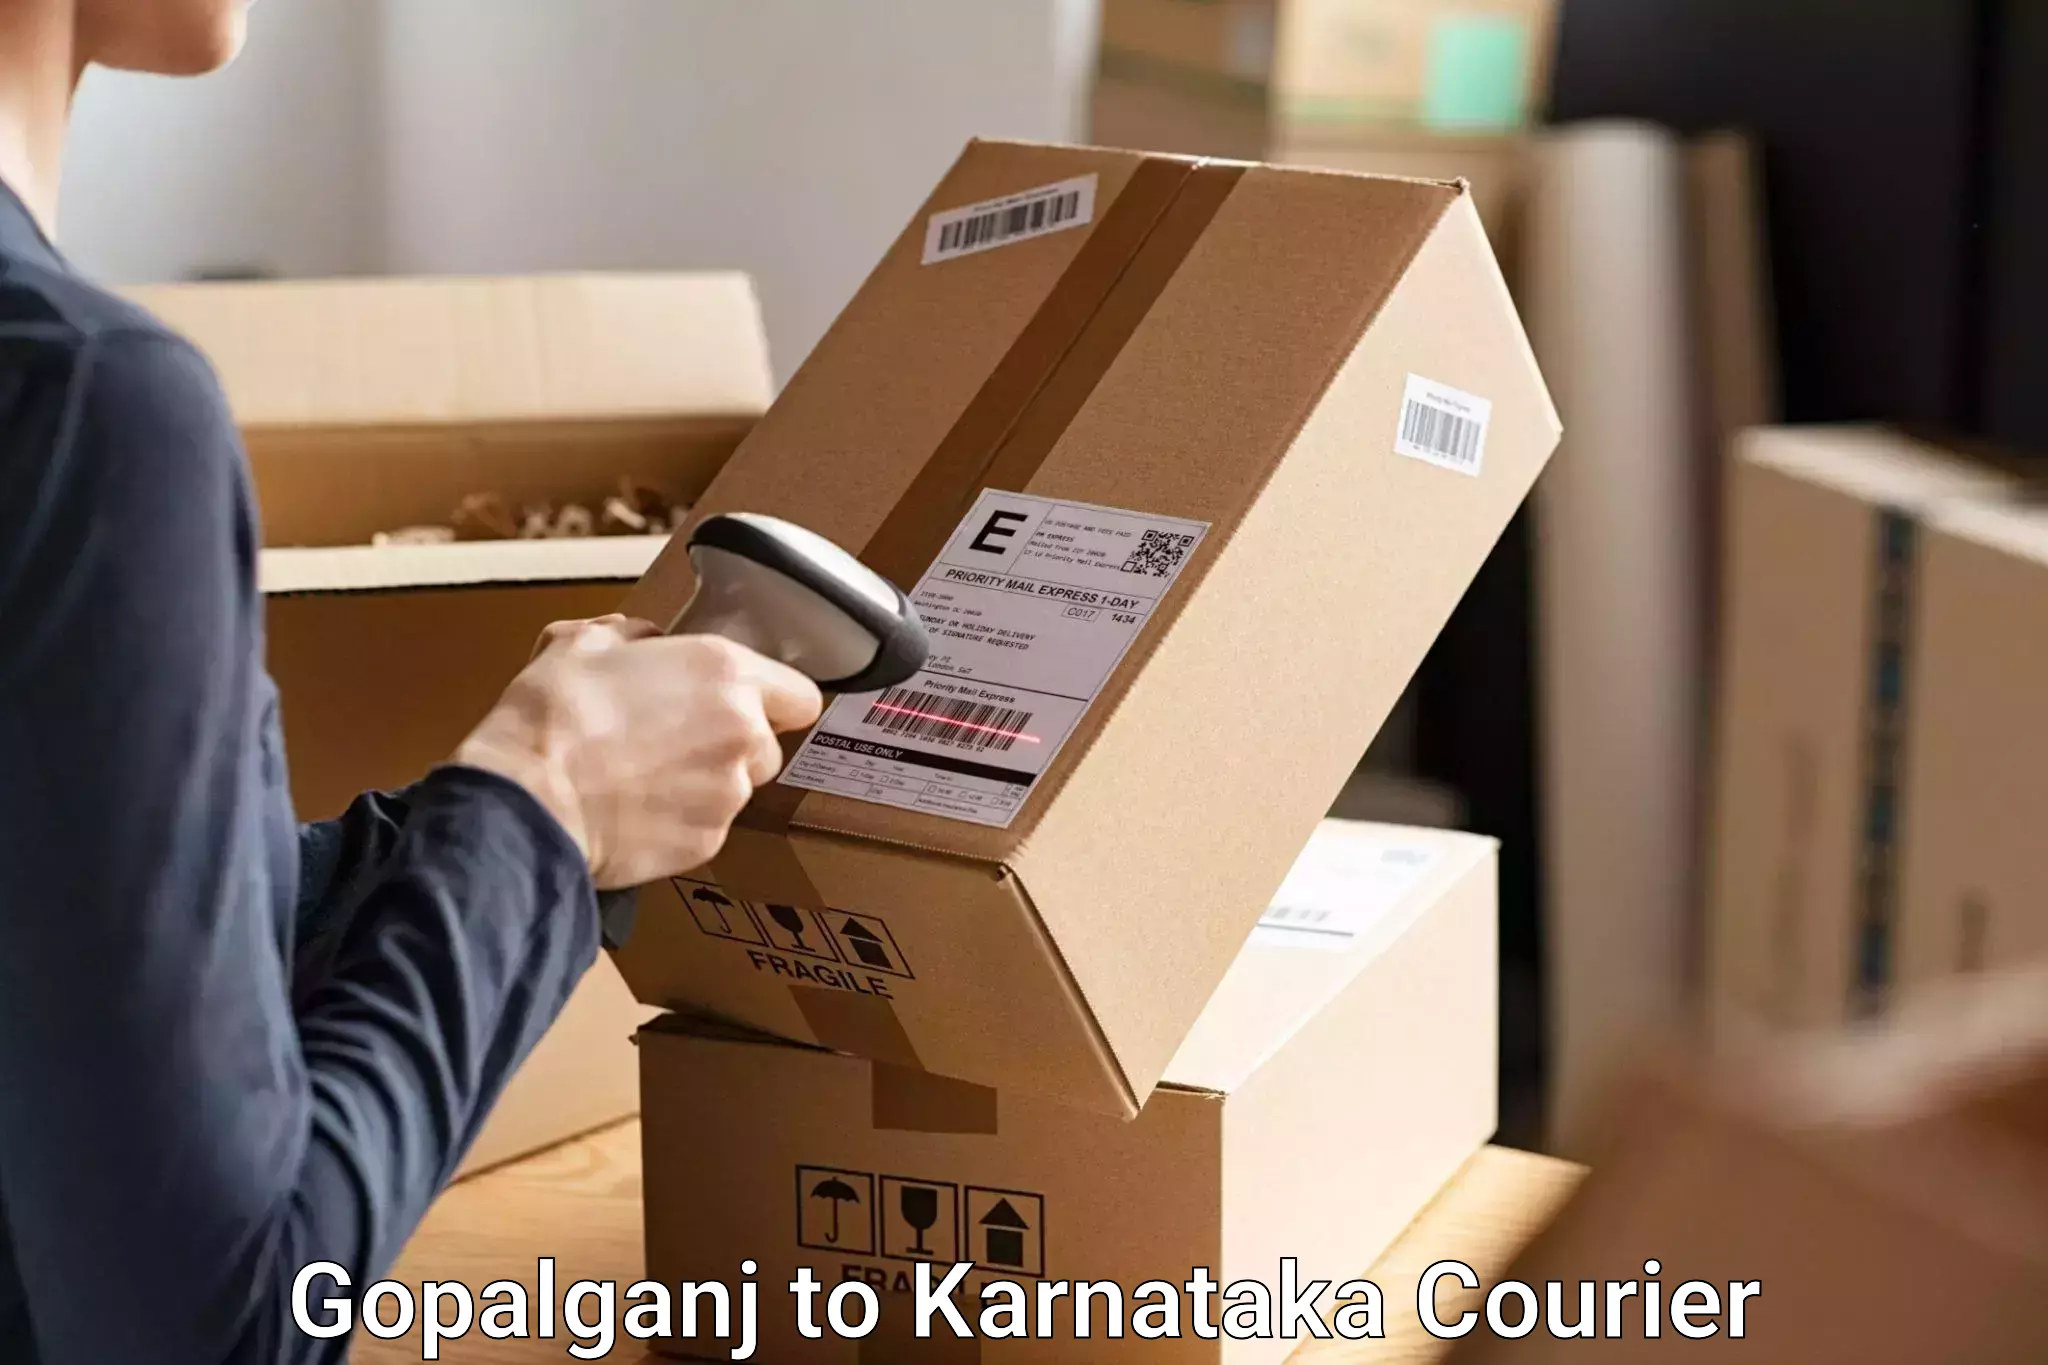 Baggage shipping service Gopalganj to Bhadravathi